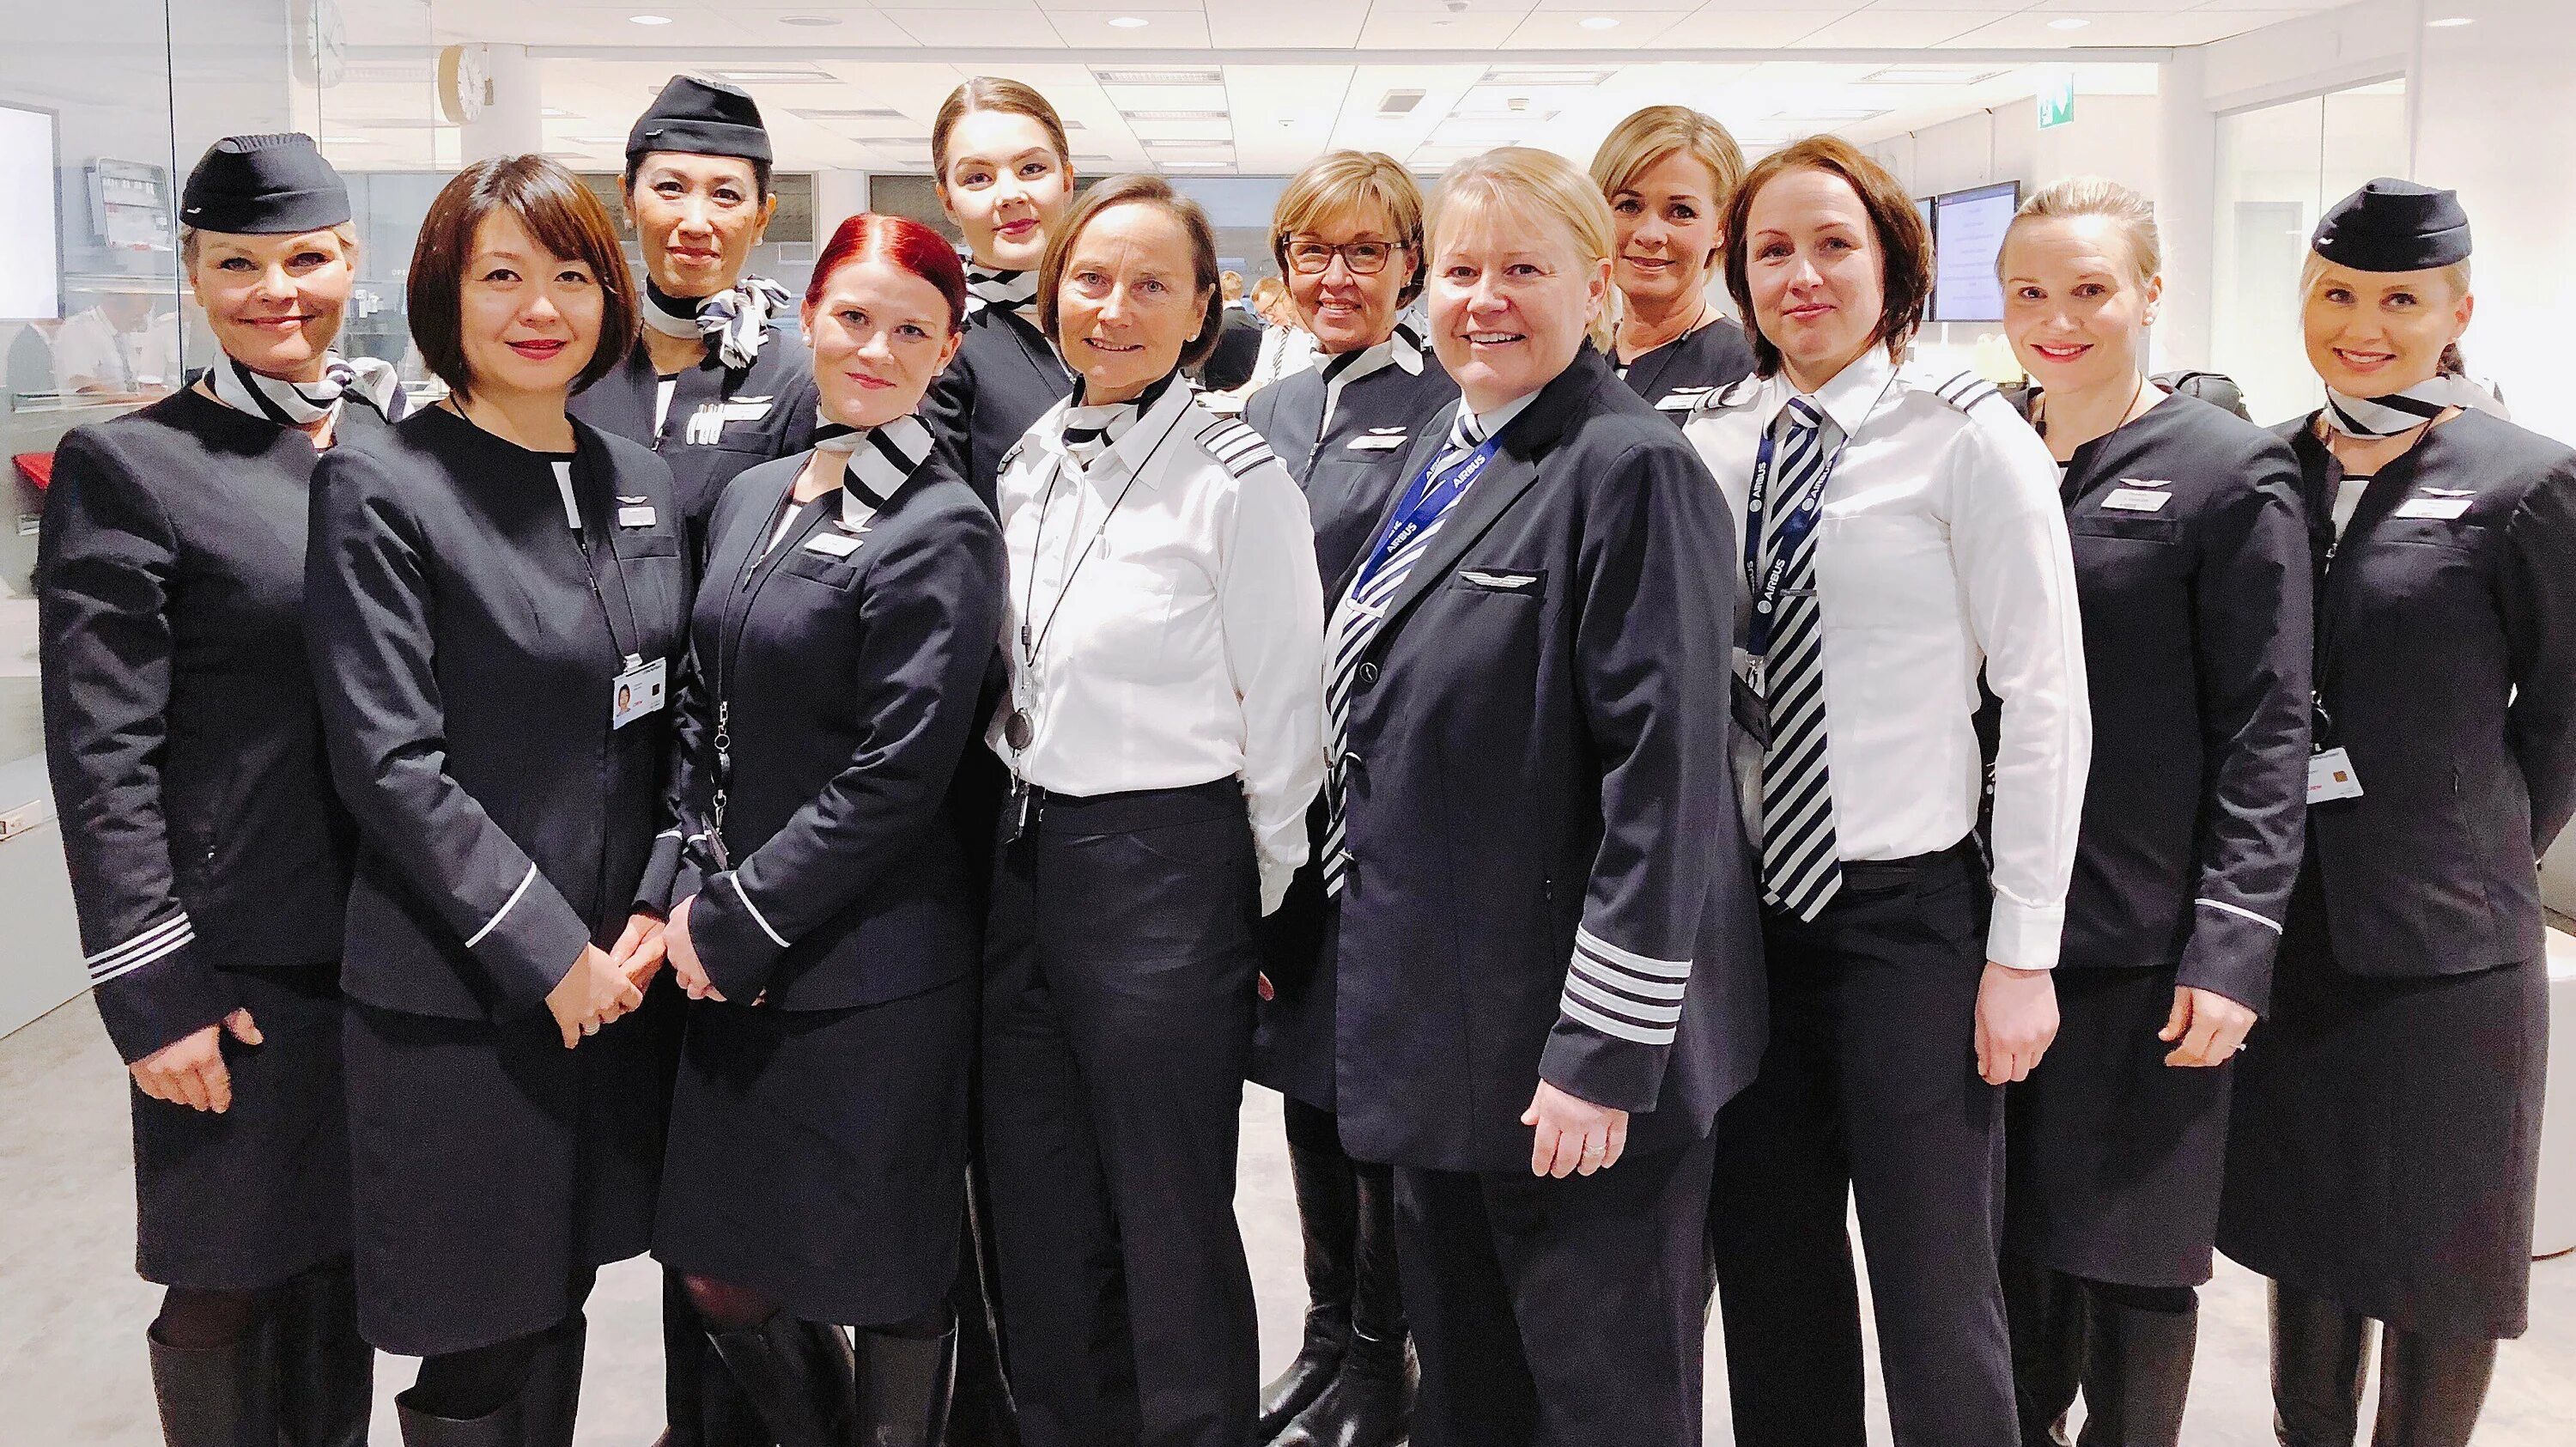 Бортпроводники Finnair. Finnair стюардессы. Финнэйр форма бортпроводников. Финские стюардессы.